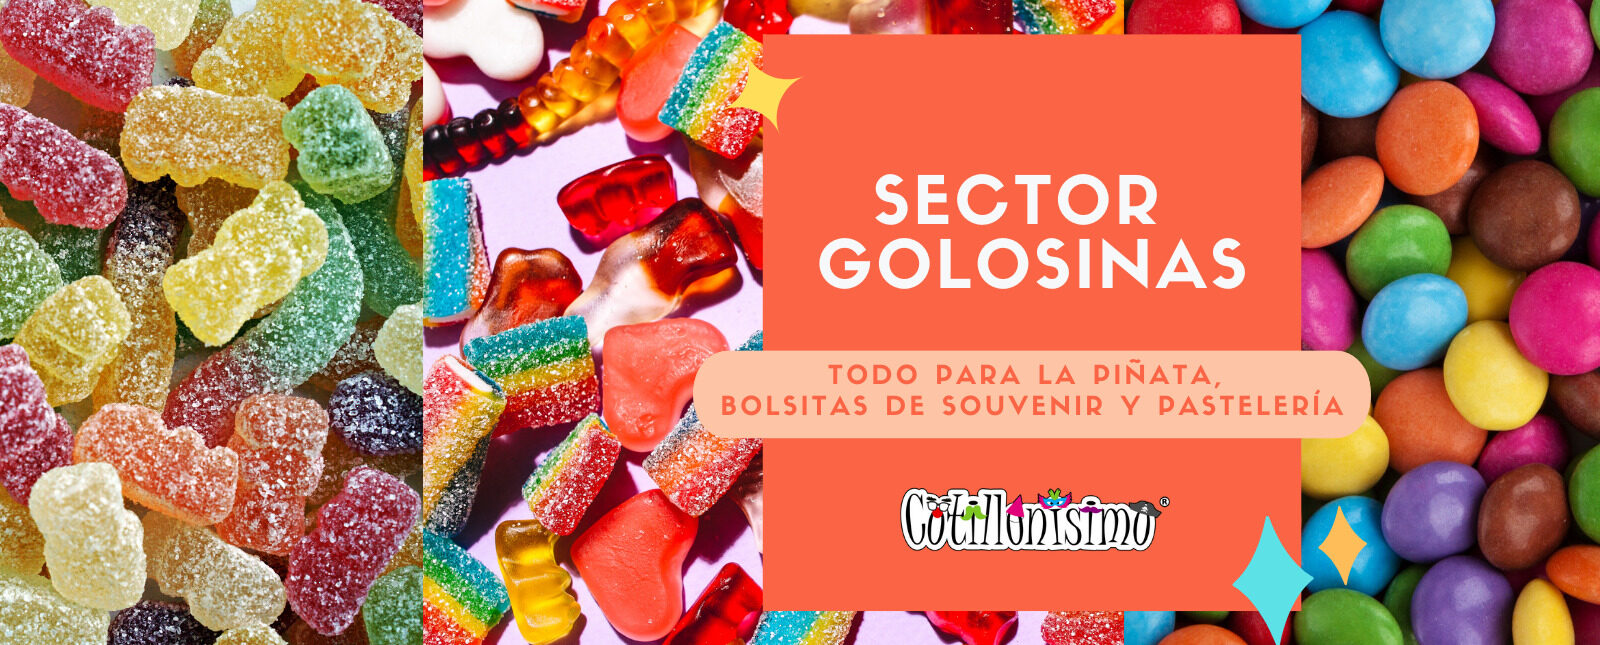 Golosinas - Cotillonisimo